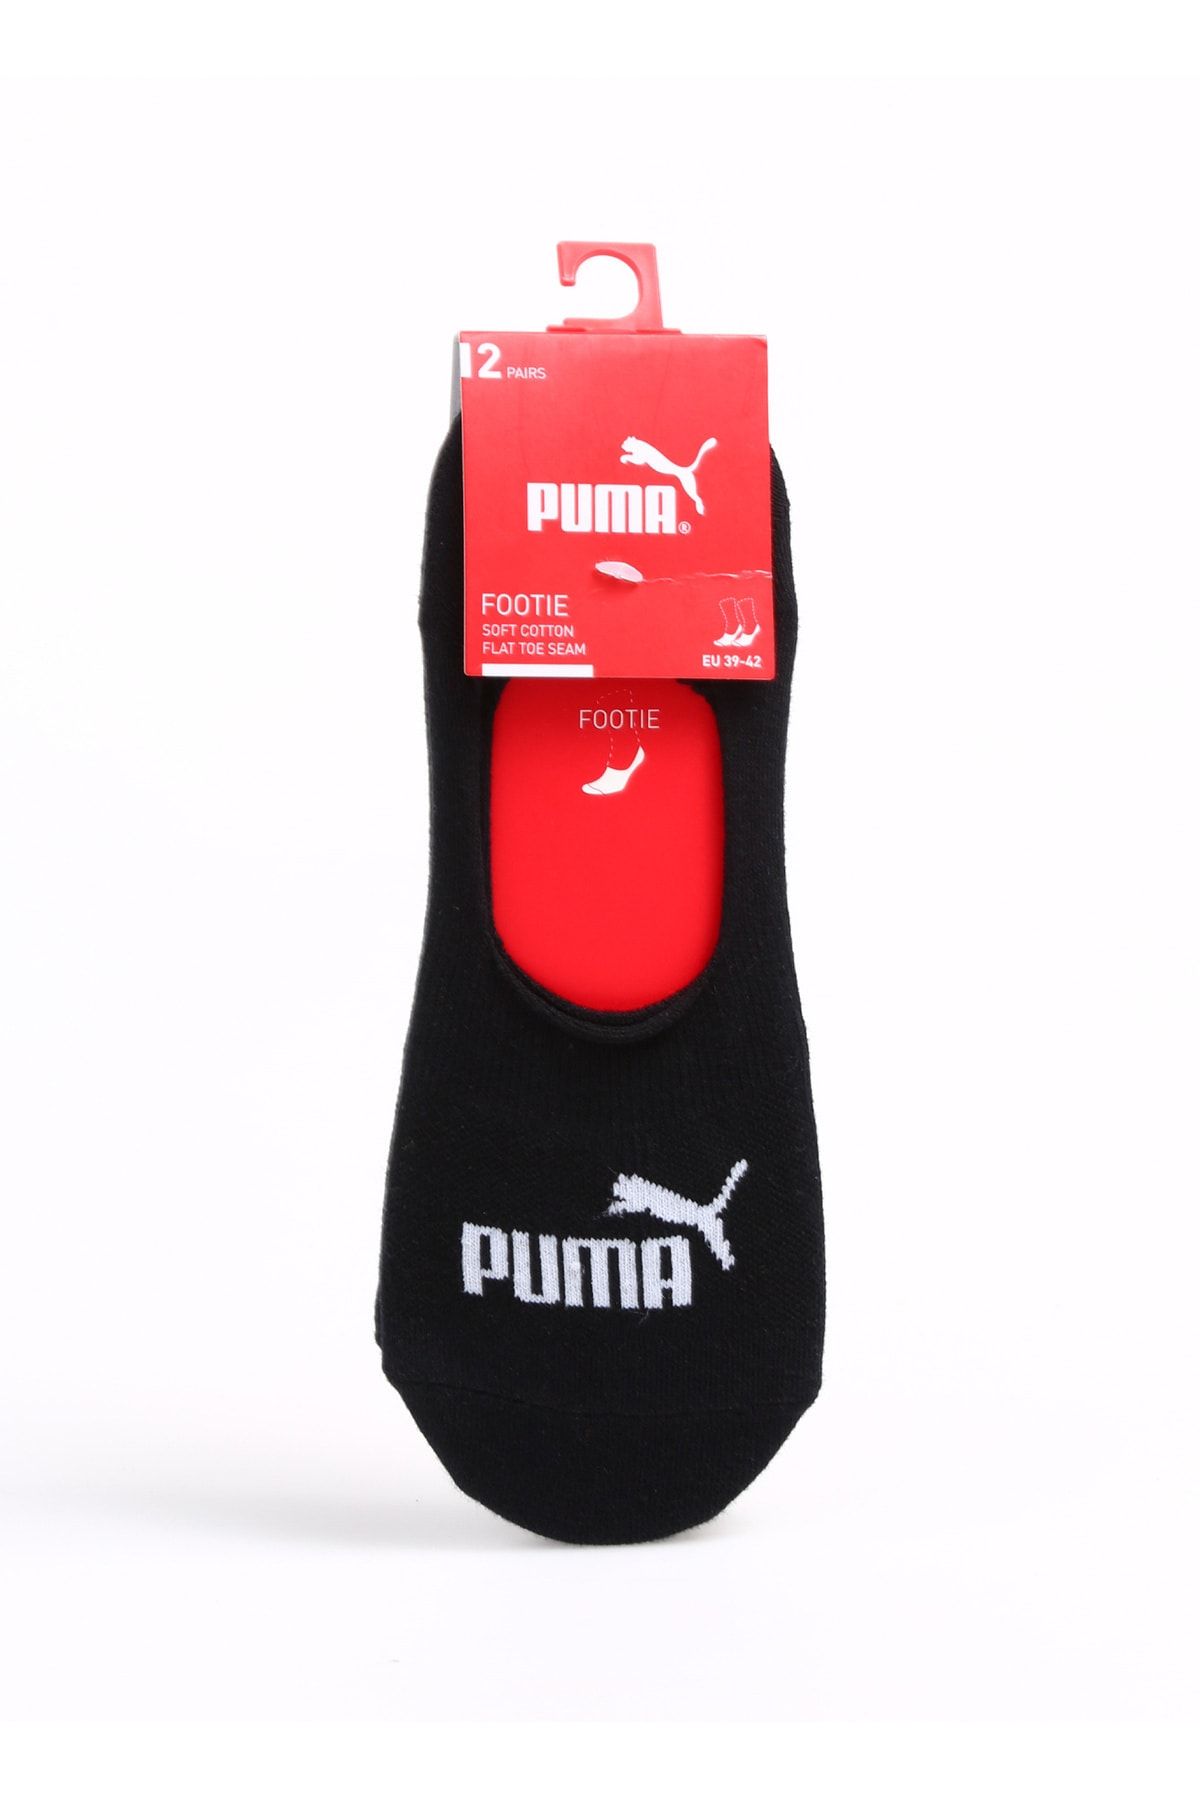 Puma Çorap, 43-46, Siyah